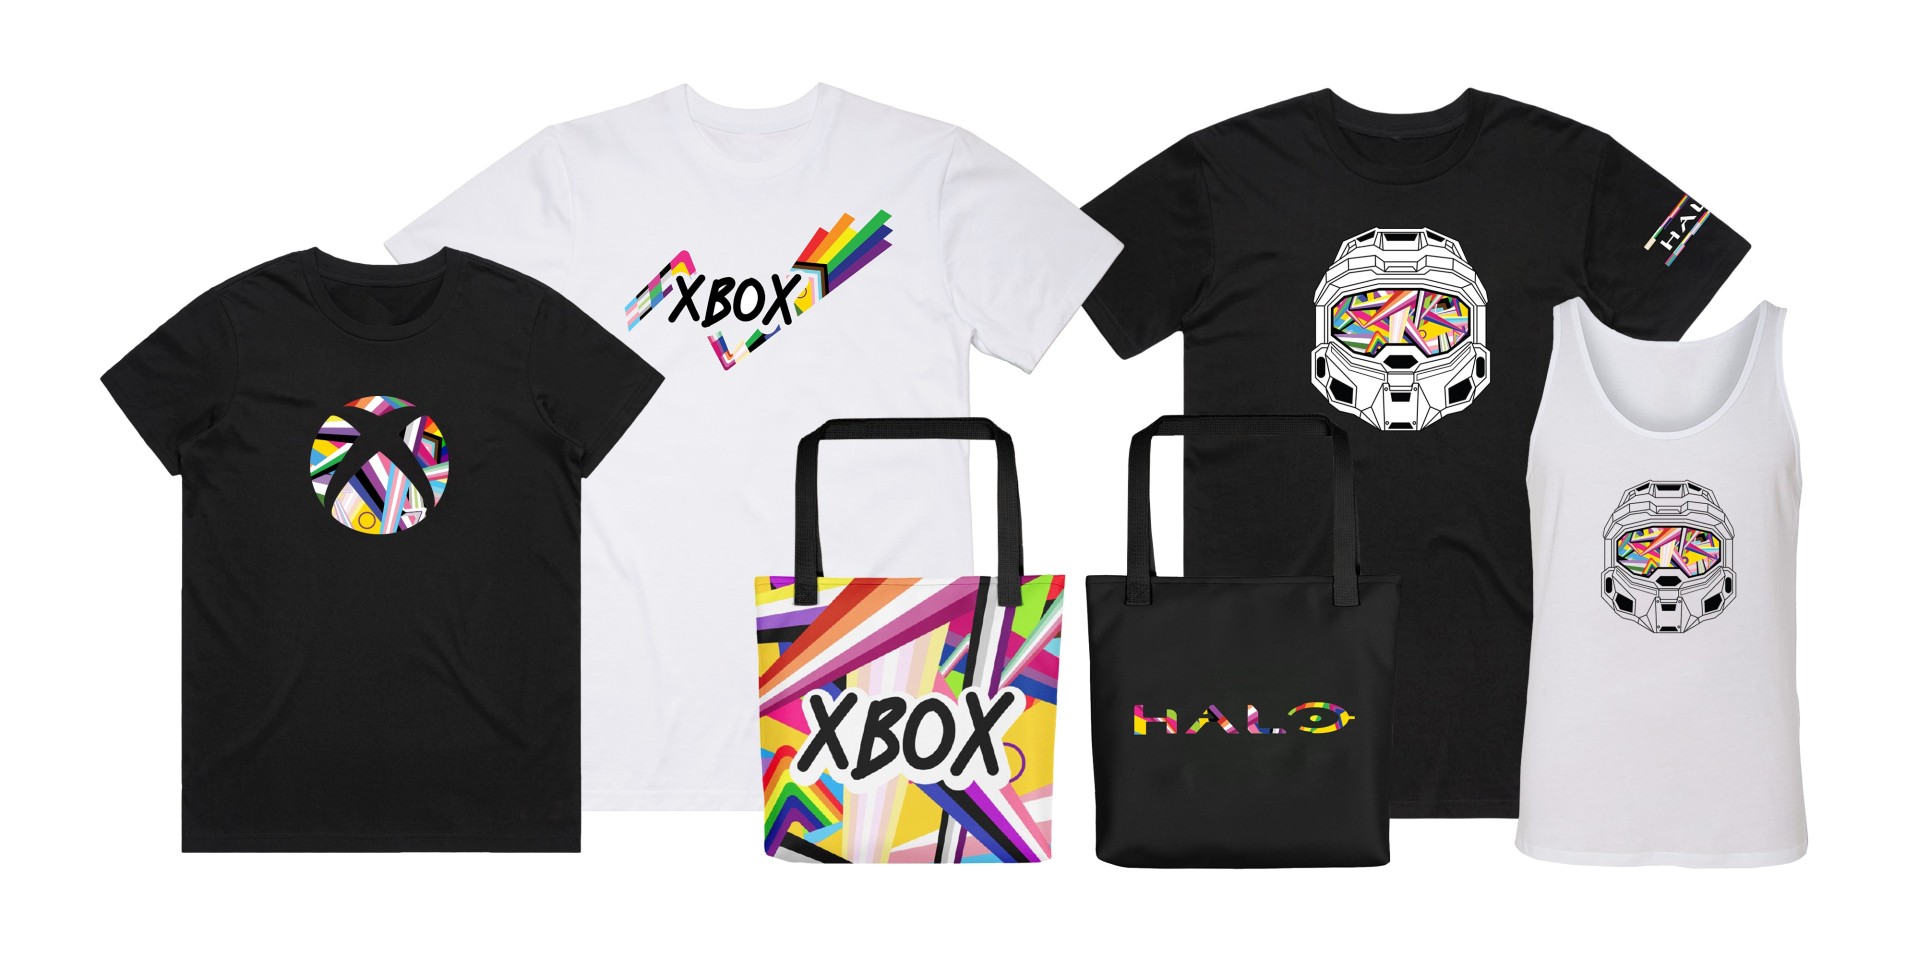  Camisetas, regatas e sacolas ecológicas com tema Xbox e Halo Pride unissex e feminino